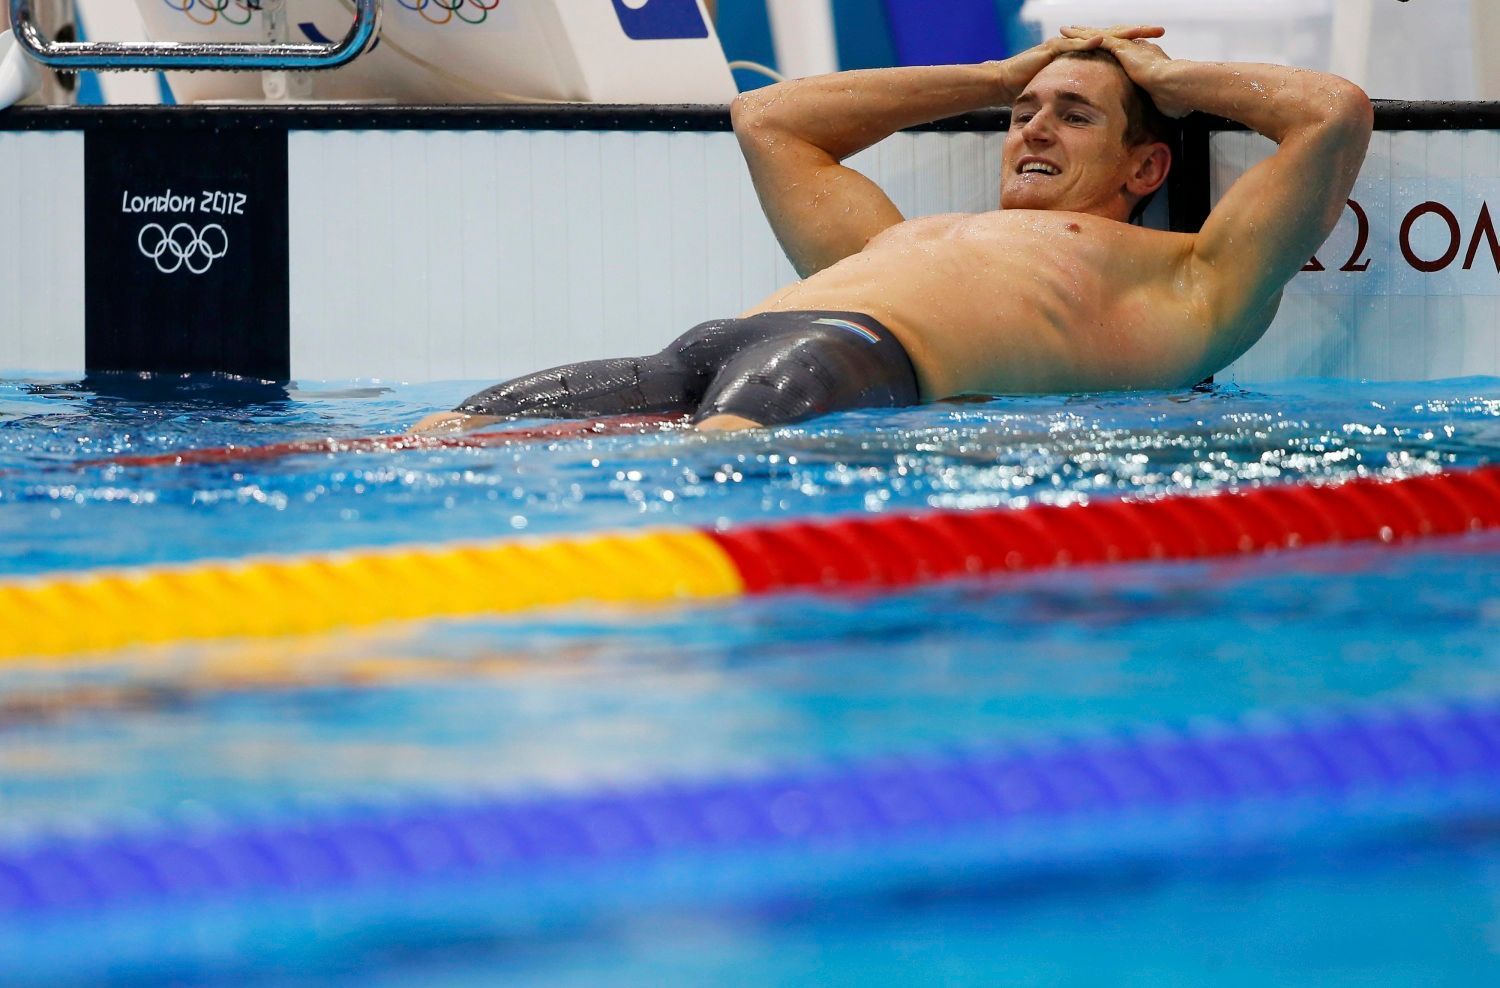 Jihoafrický plavec Cameron van der Burgh slaví vítězství v kategorii 100 metrů prsa na OH 2012 v Londýně.